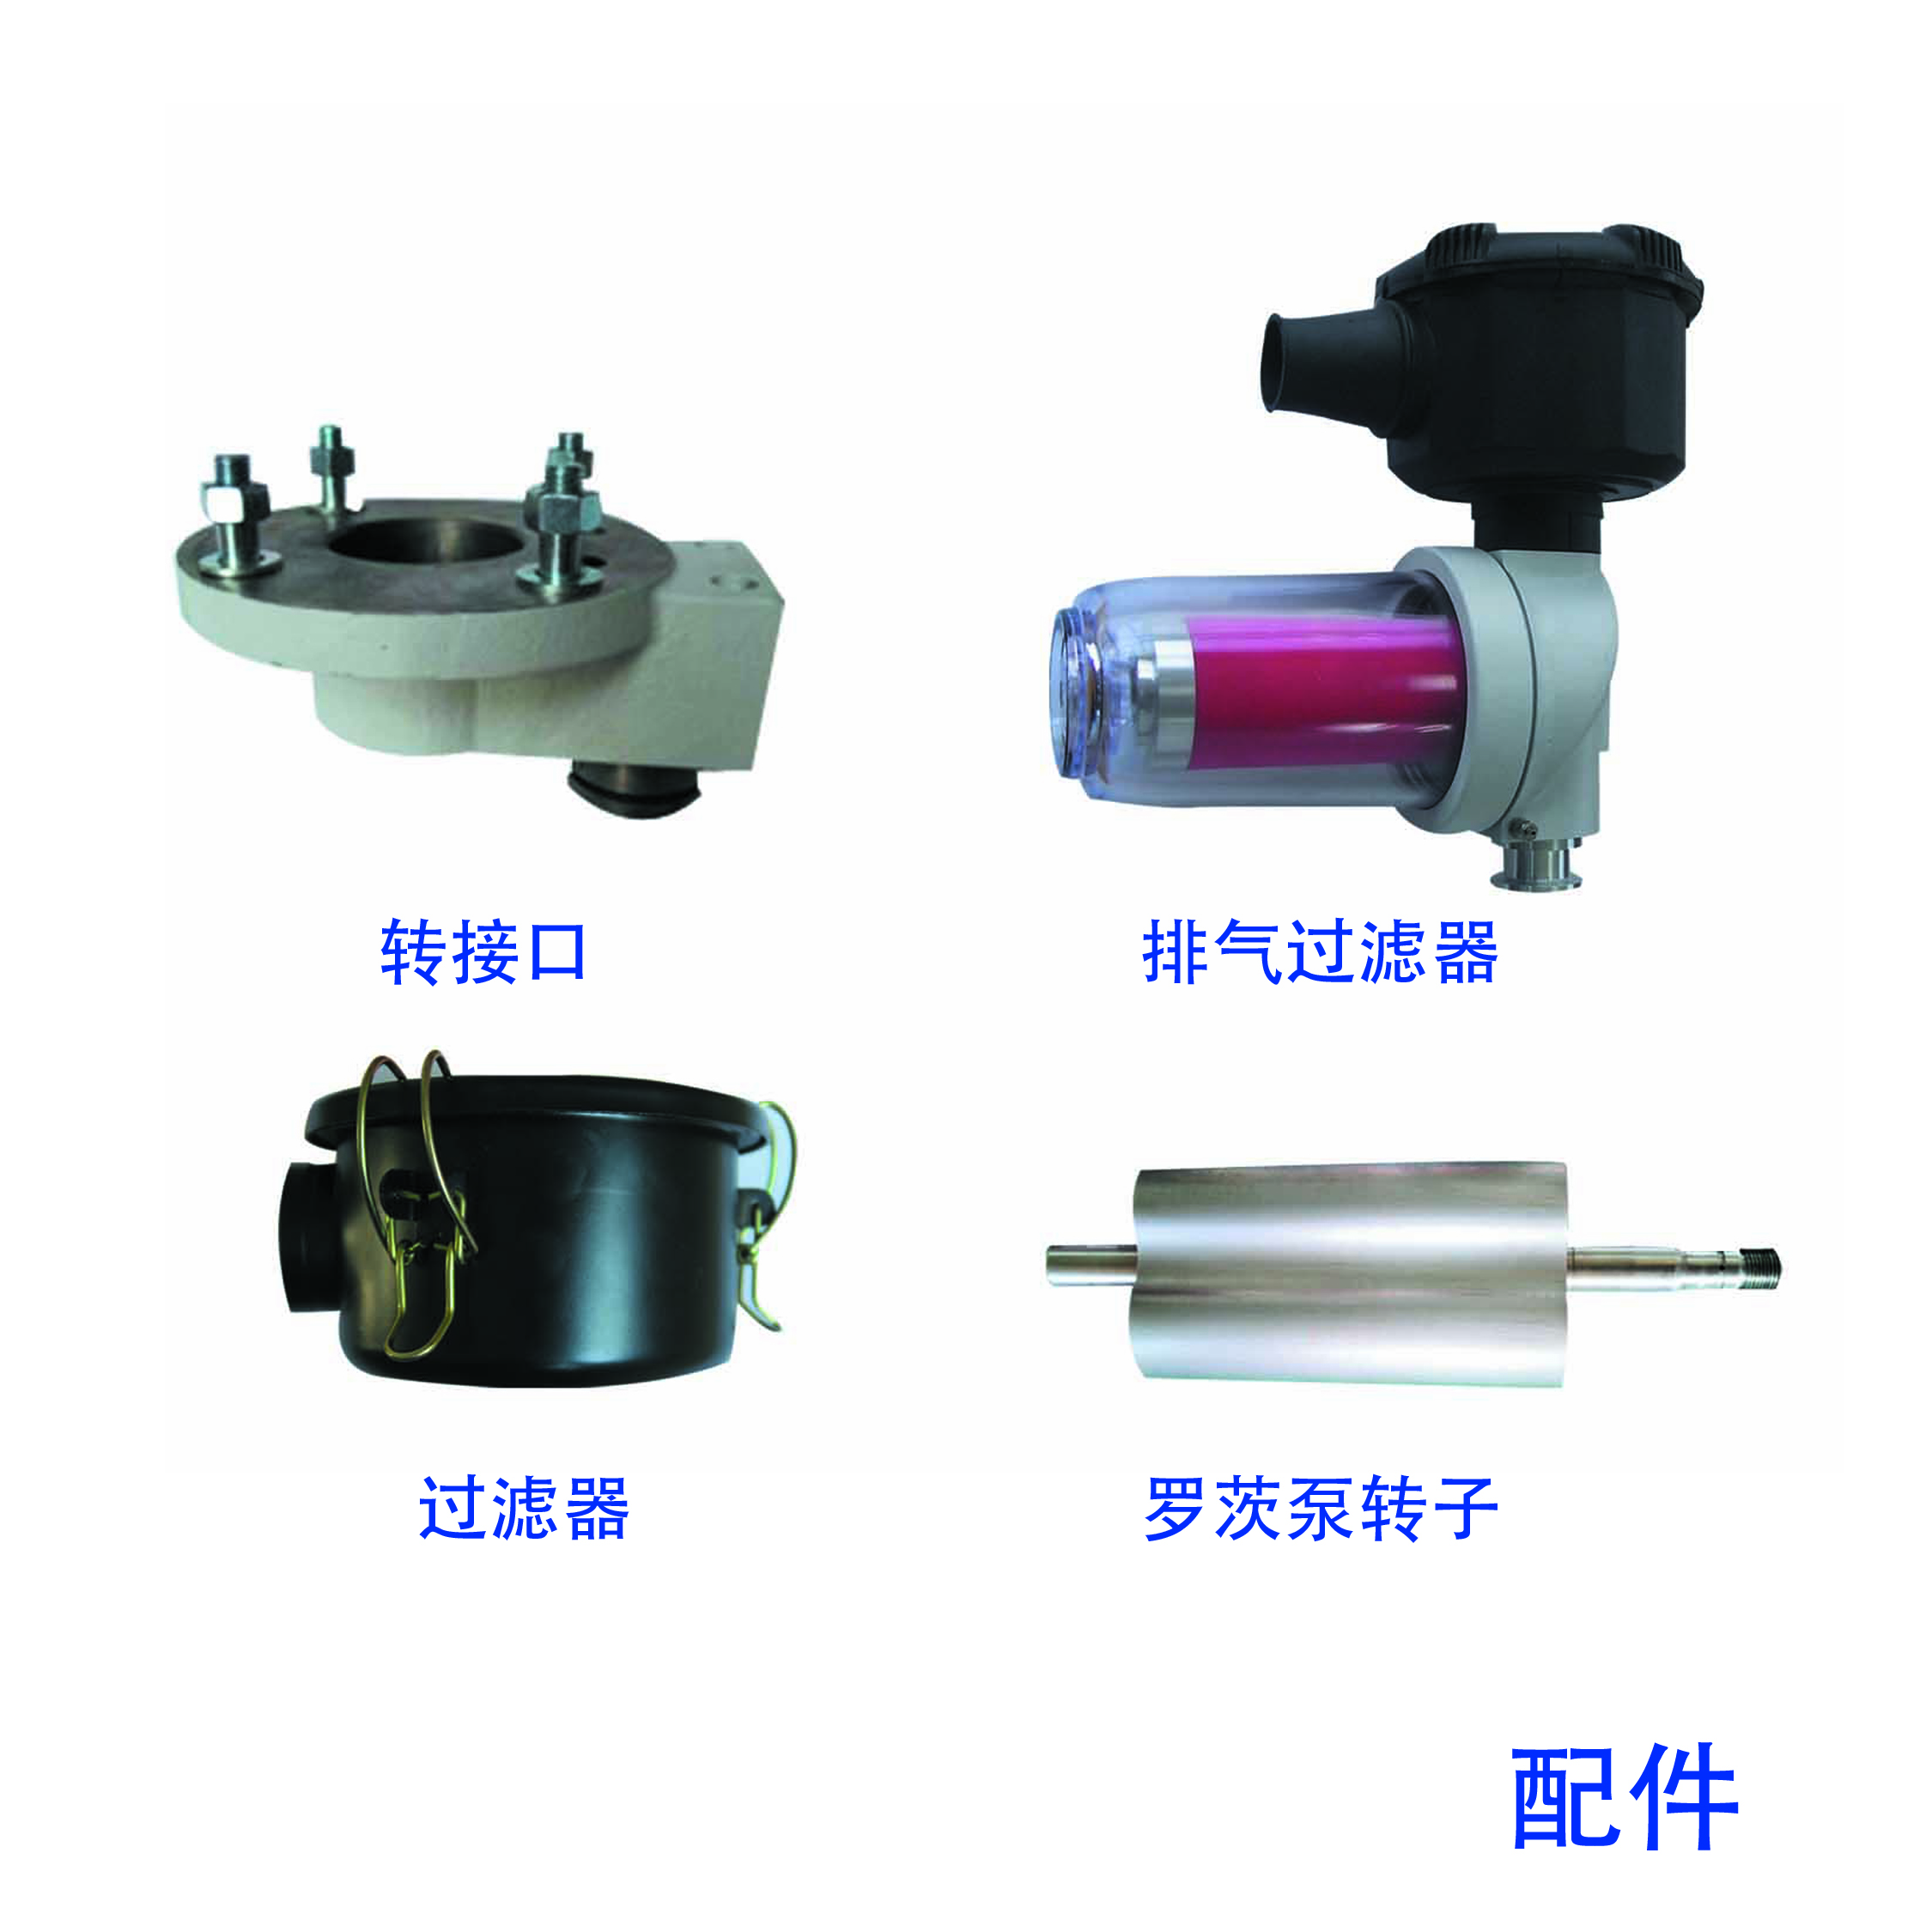 Vacuum Pump Unit Accessories